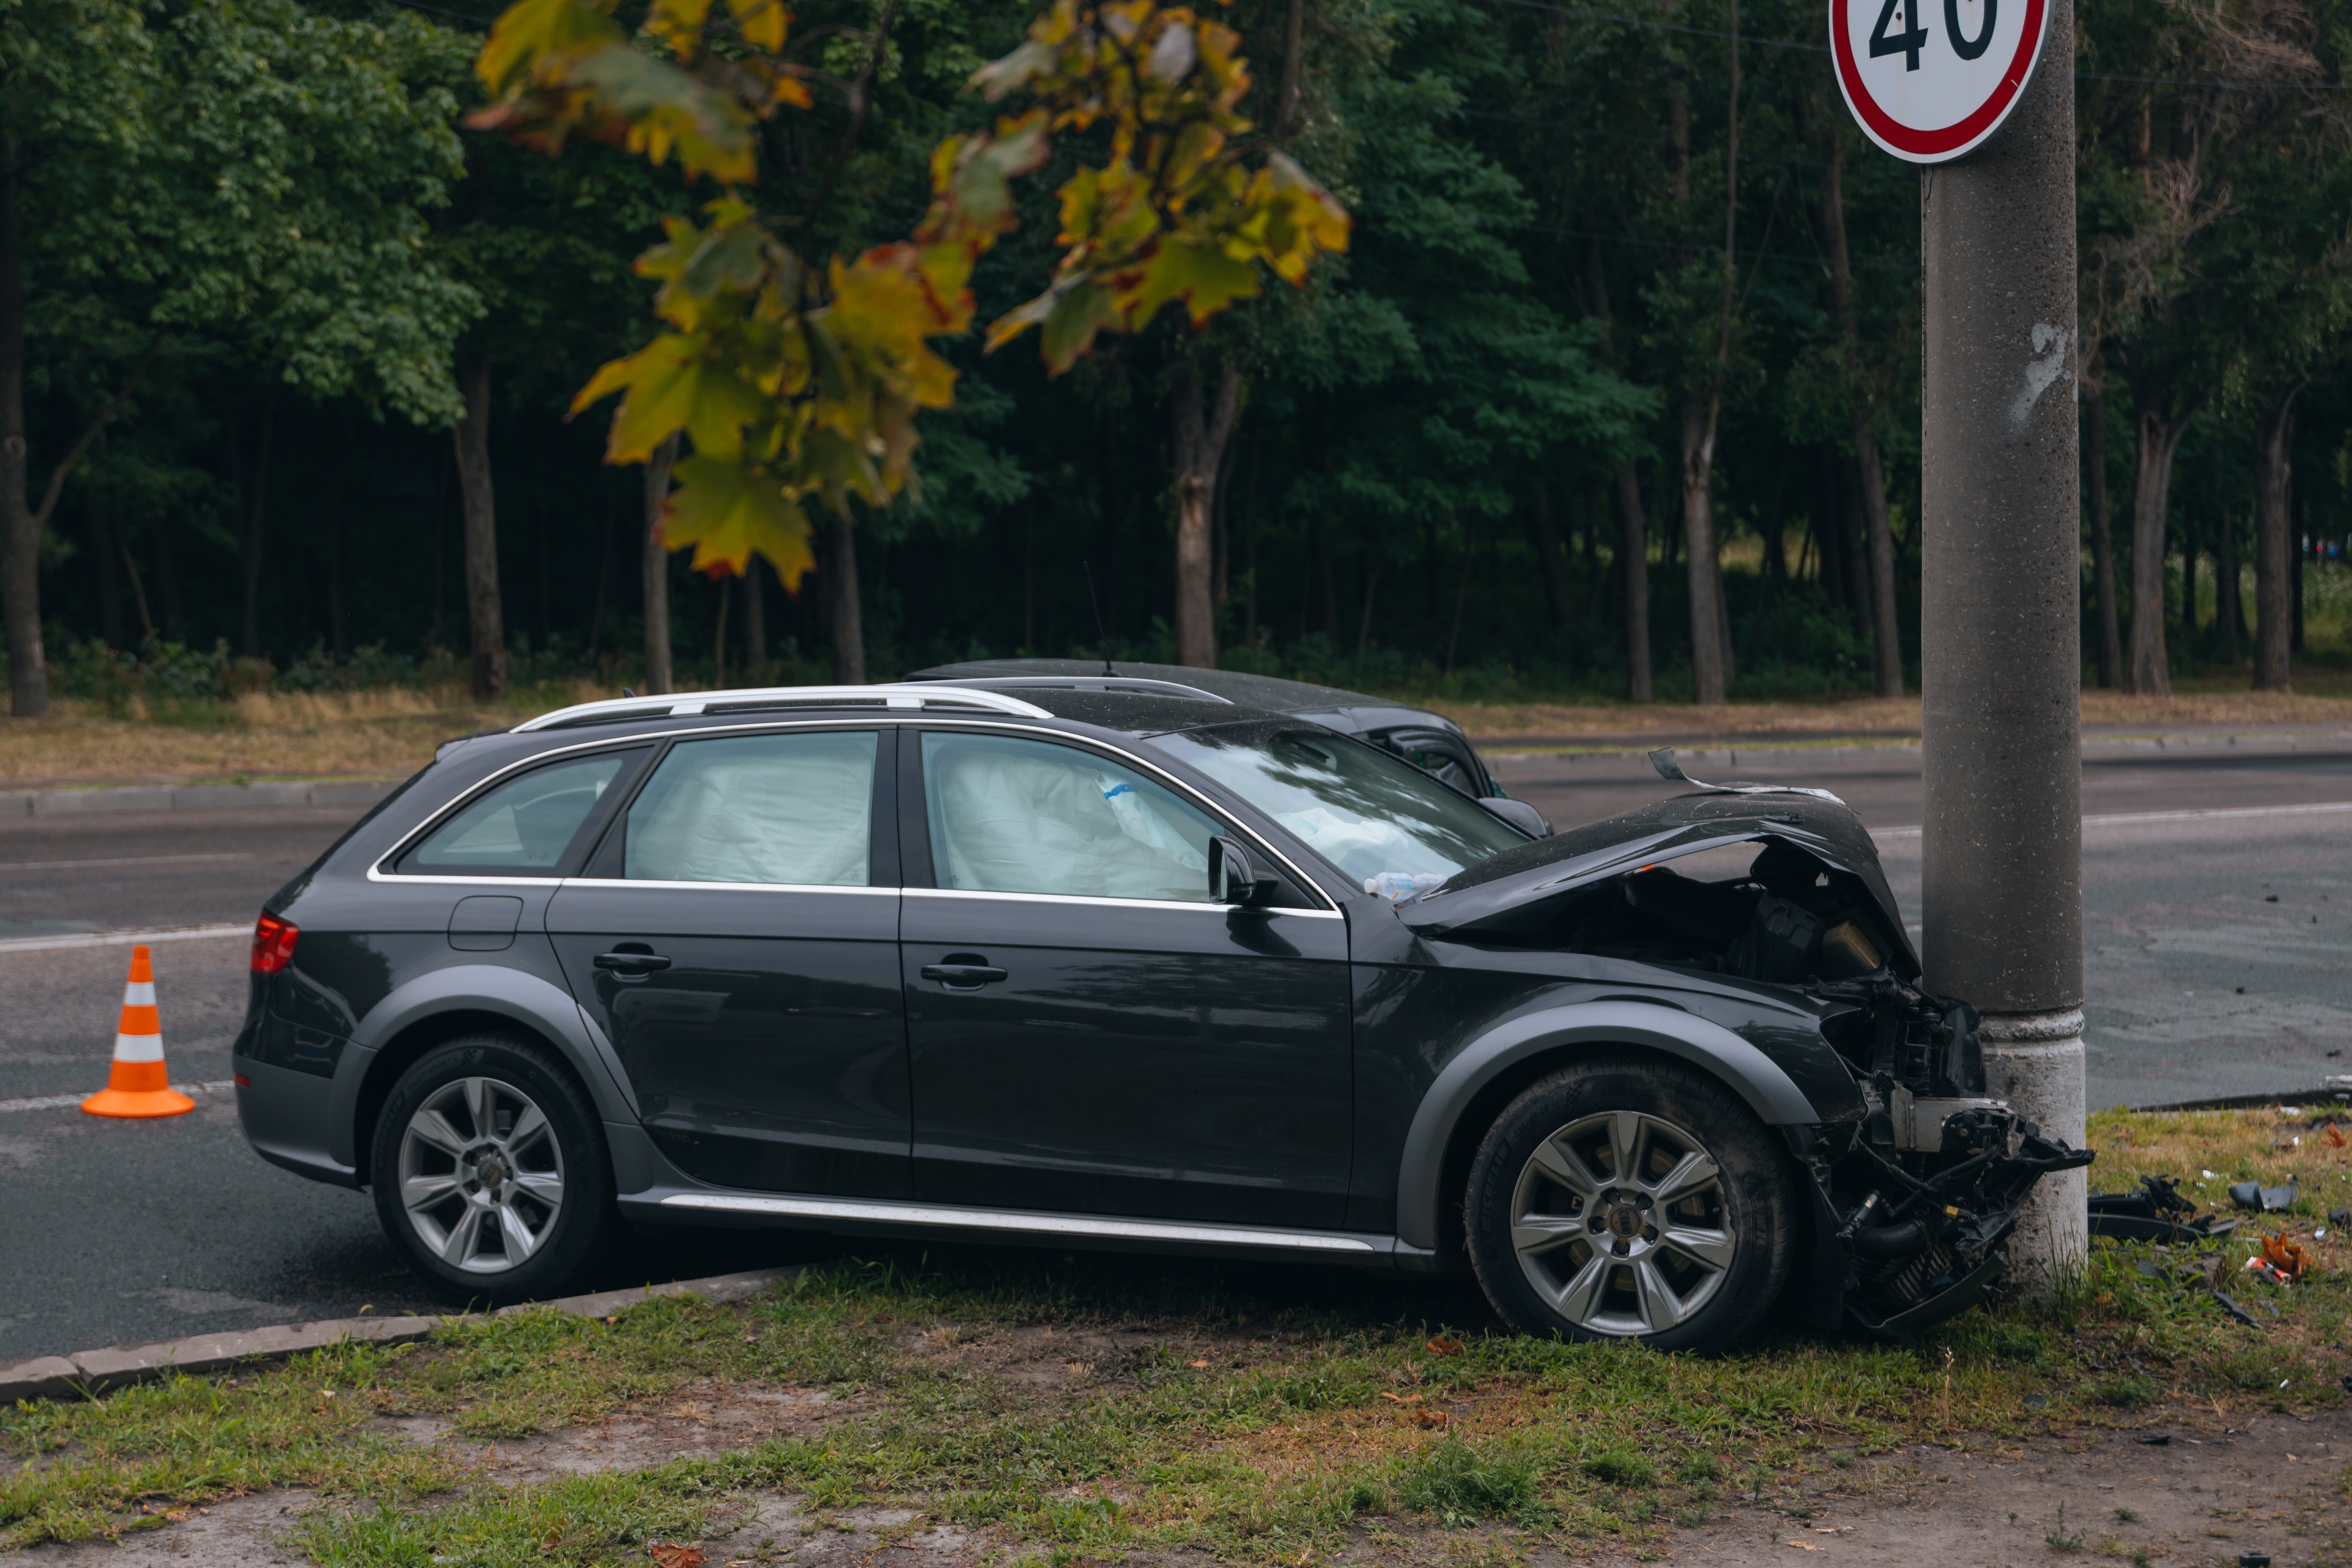 Une voiture qui s'est encastrée dans un poteau | Source : Shutterstock